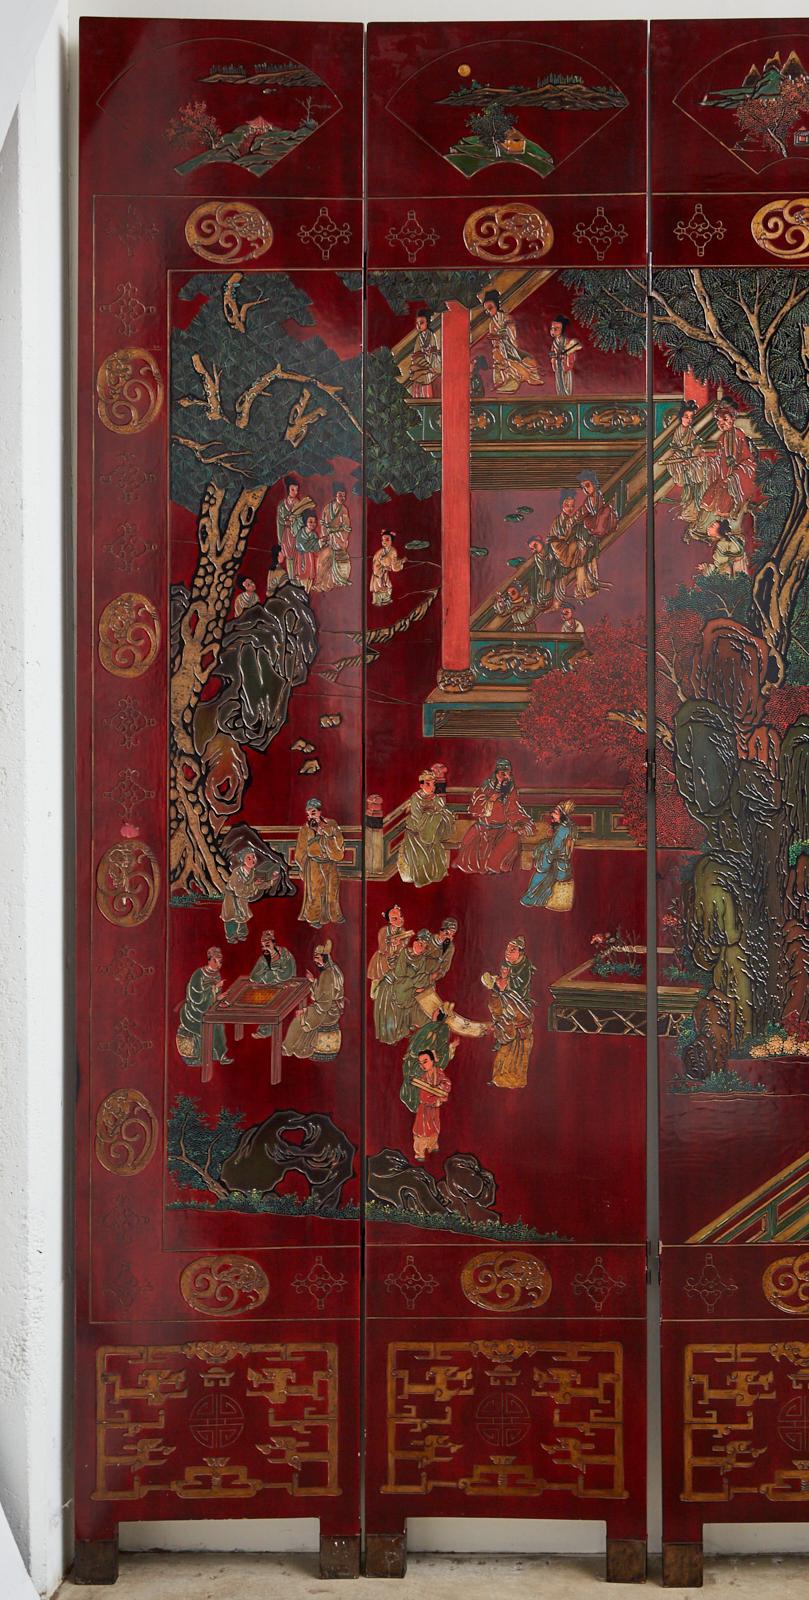 Sehr beeindruckender monumentaler chinesischer Export-Coromandel-Bildschirm mit zwölf Paneelen, der einen üppigen Innenhof mit Figuren darstellt, die sich in Freizeitaktivitäten ergehen. Die Paneele sind mit leuchtenden Farben beschnitten und